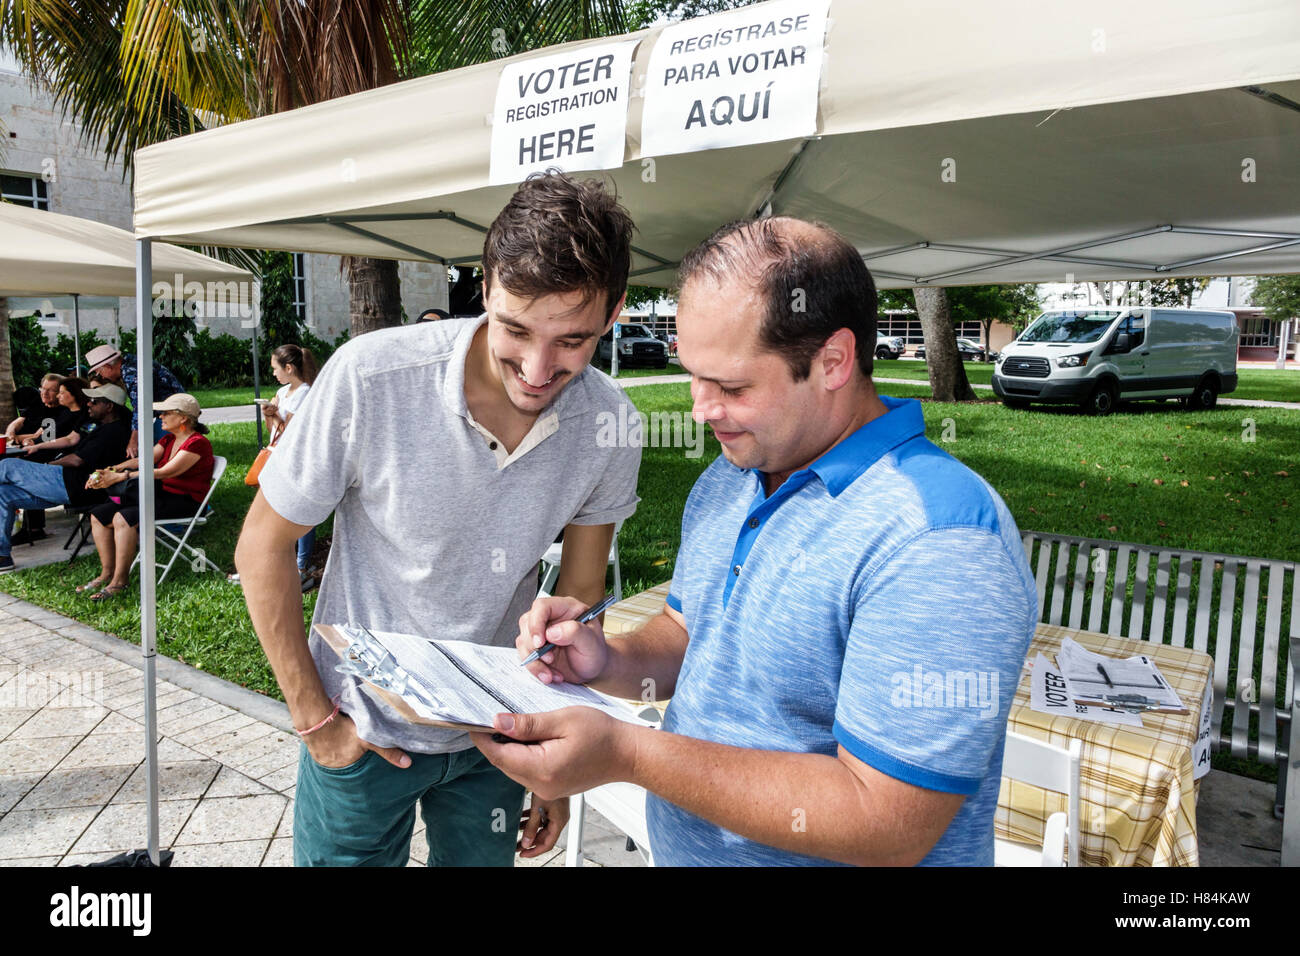 Miami Beach Florida,Collins Park,registrazione voter,Inglese Spagnolo,uomo ispanico maschio,sondaggio,questionario,FL160925114 Foto Stock